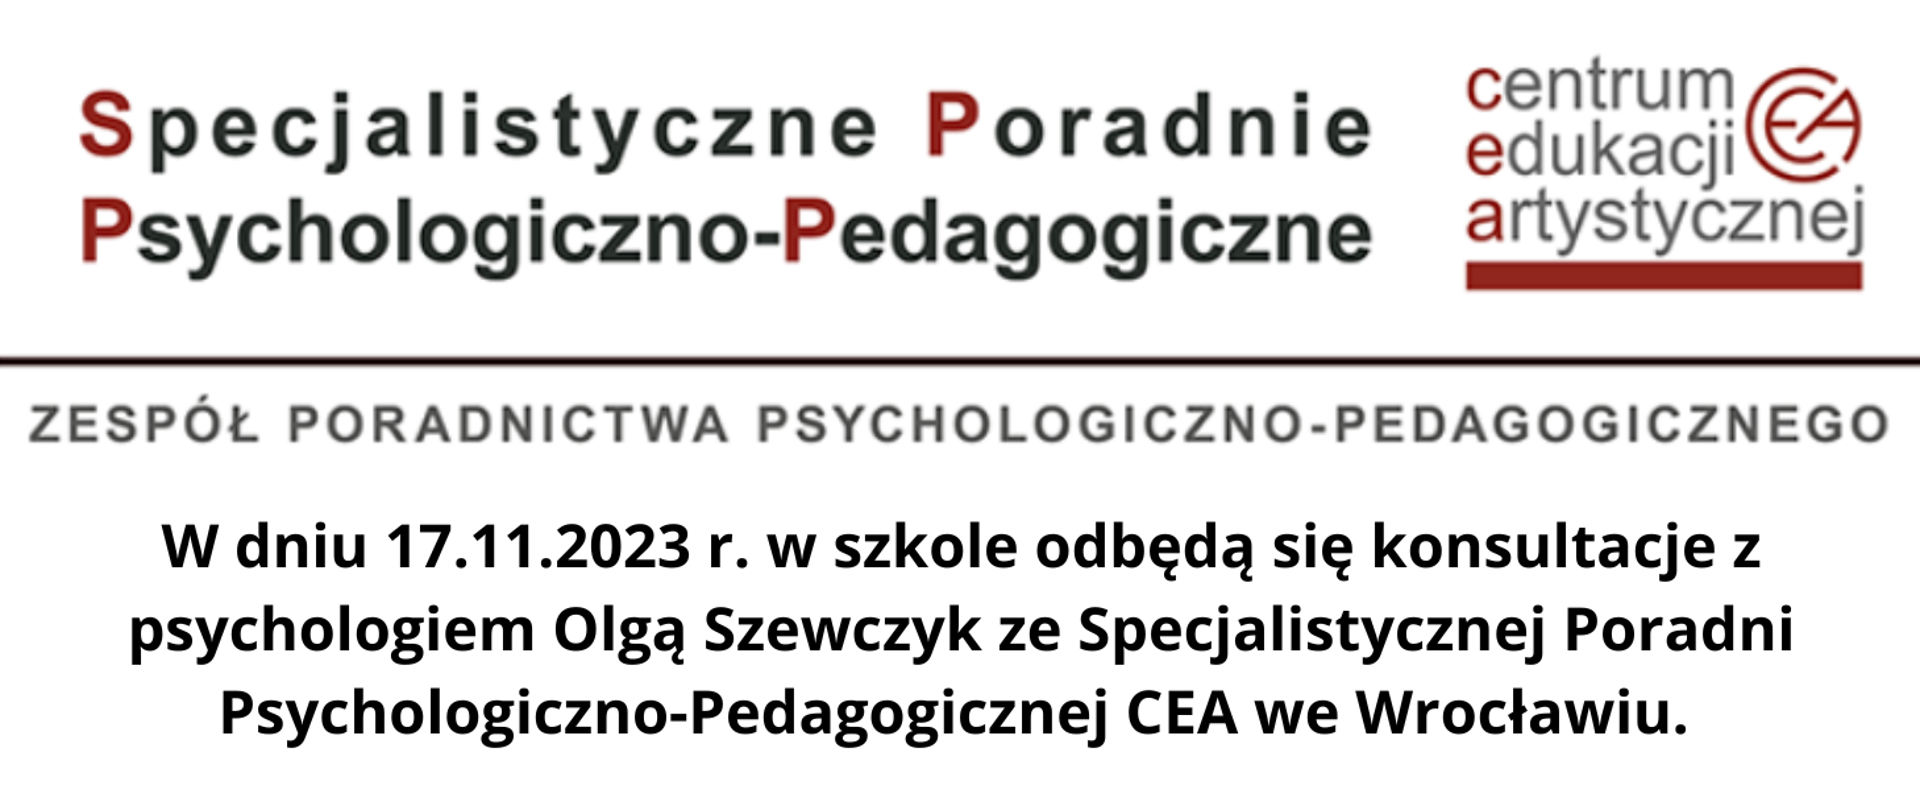 Informacja na białym tle z tekstem "W dniu 17.11.2023 r. w szkole odbędą się konsultacje z psychologiem Olgą Szewczyk ze Specjalistycznej Poradni Psychologiczno-Pedagogicznej CEA we Wrocławiu. "